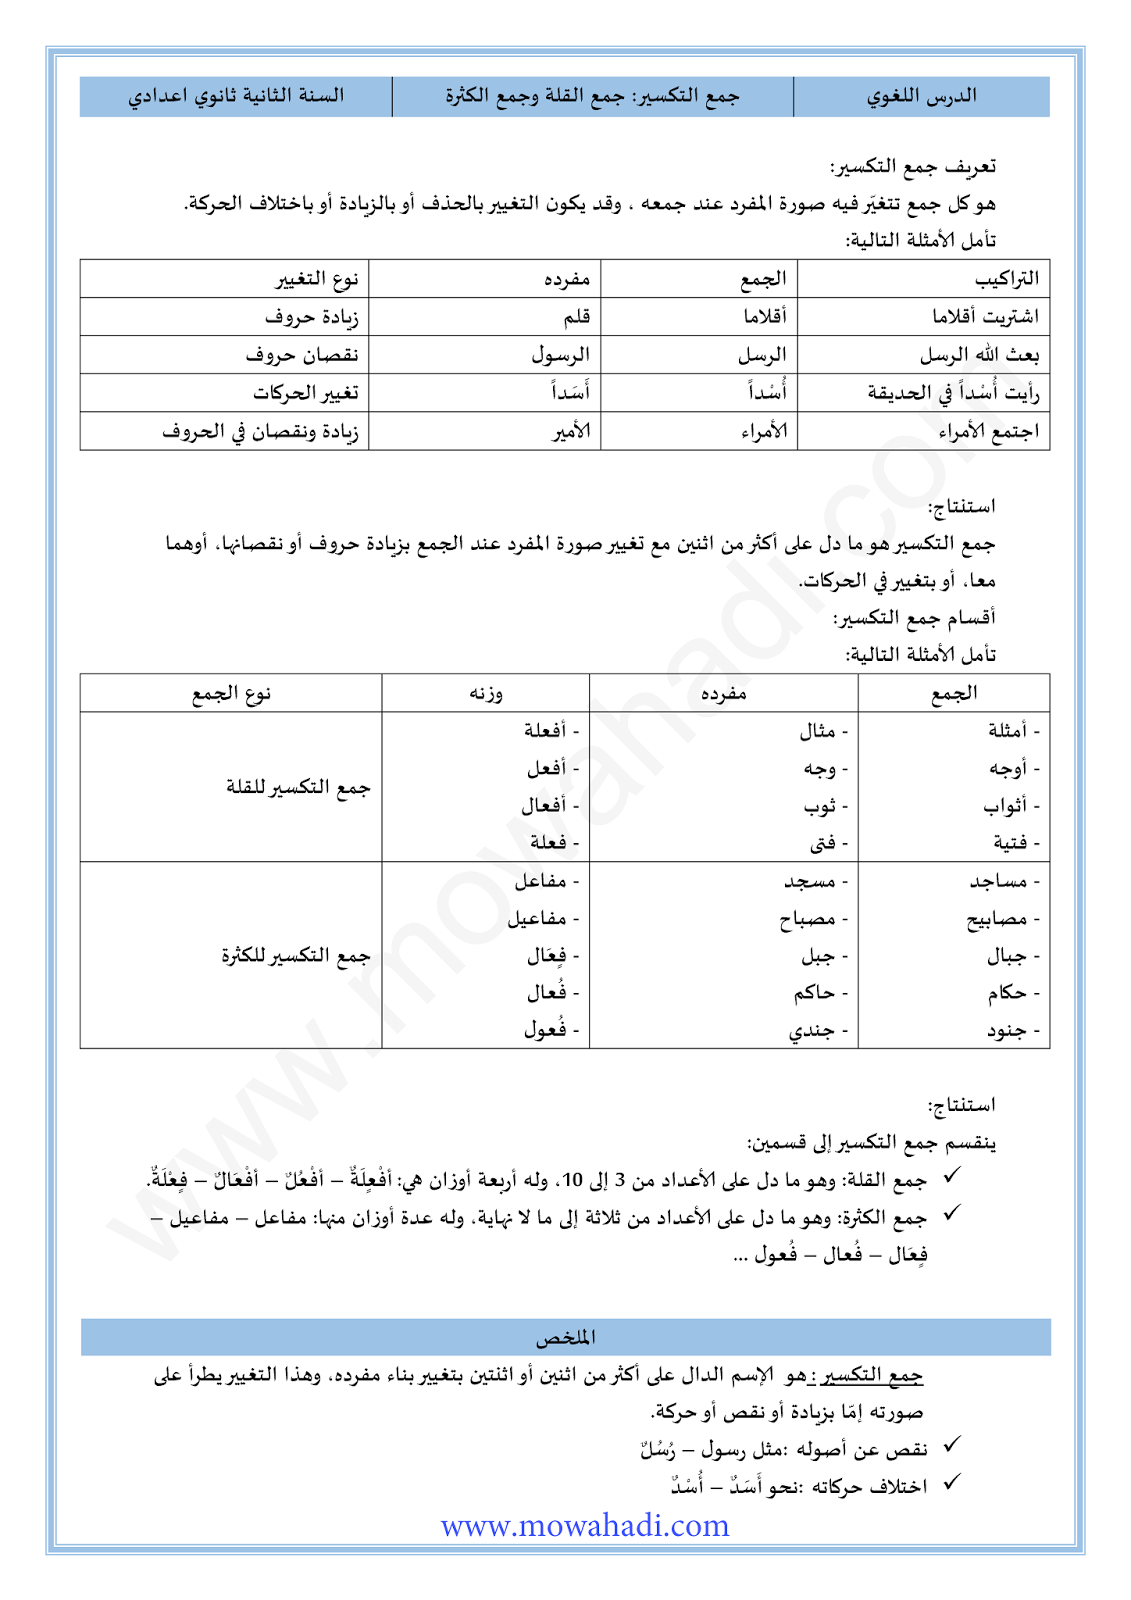 الدرس اللغوي جمع التكسير للسنة الثانية اعدادي في مادة اللغة العربية 4-cours-loghawi2_001